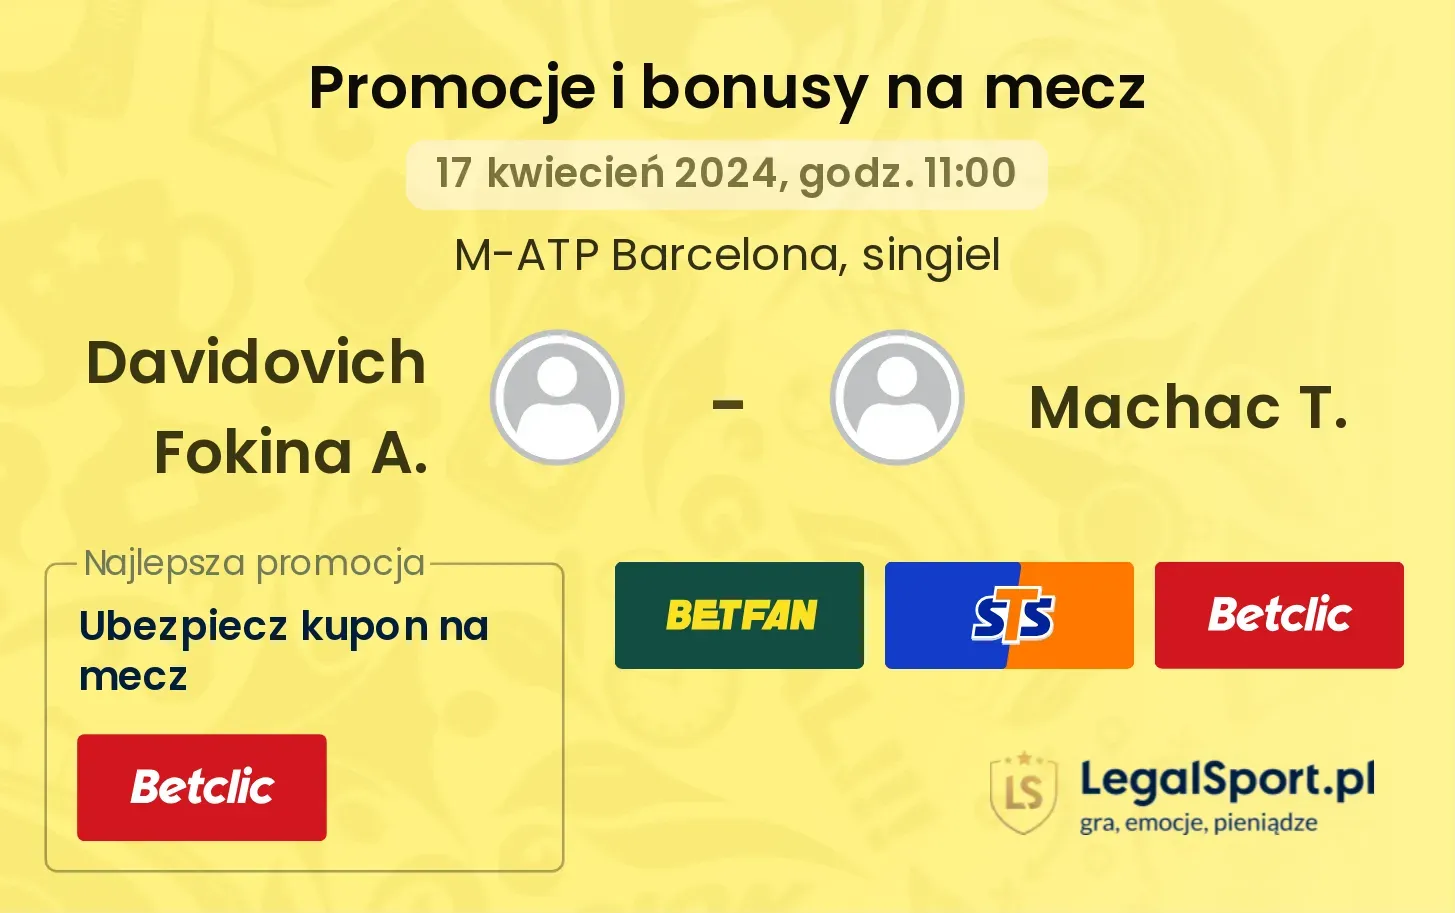 Davidovich Fokina A. - Machac T. promocje bonusy na mecz